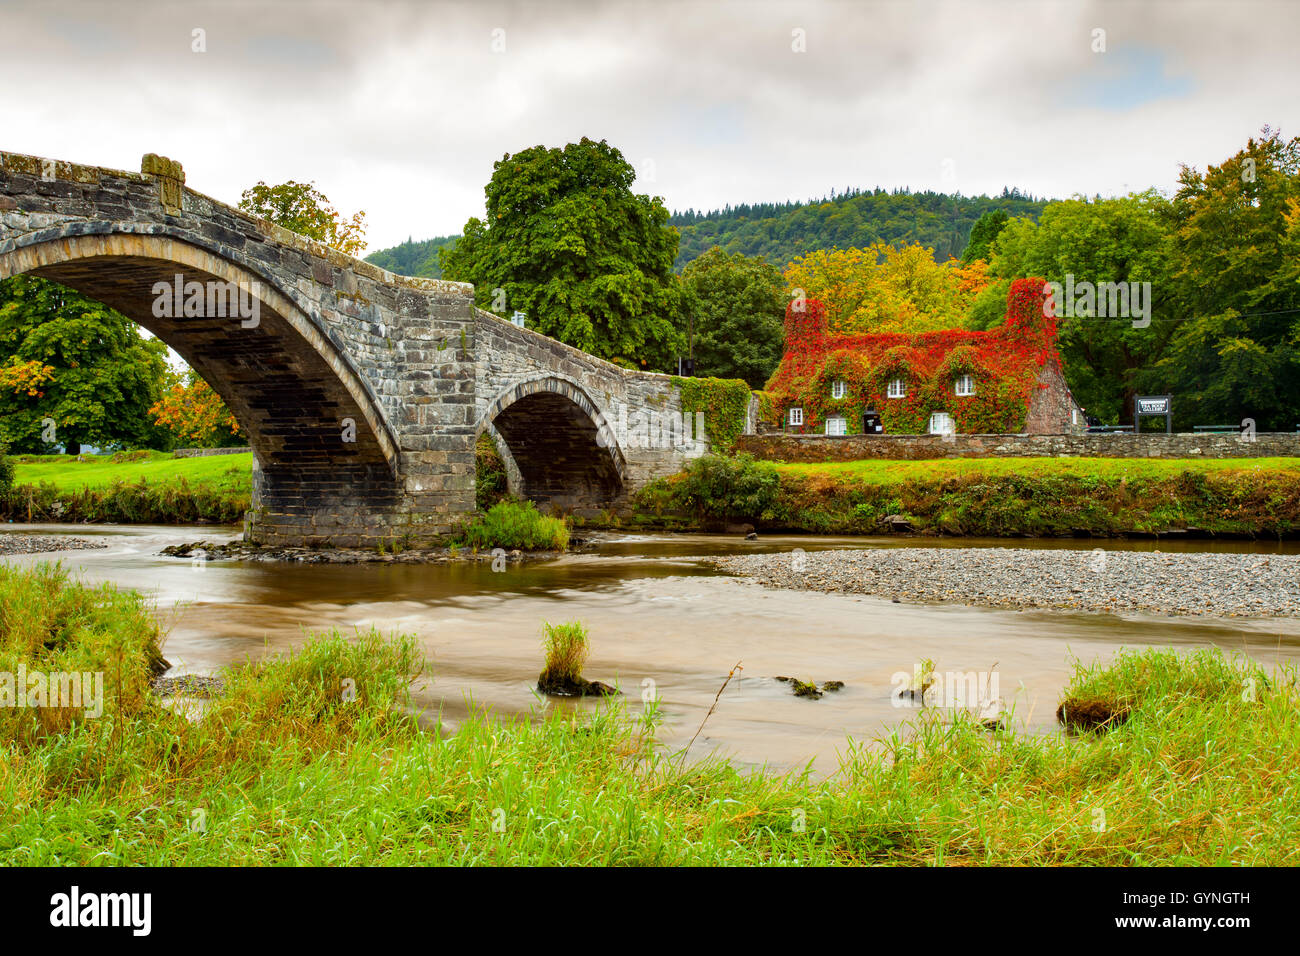 L'automne arrive à Tu Hwnt J'r Bont de thé à Llanrwst sur les rives de la rivière Conwy. L'automne commence le rougissement de la puce qui transforme un rouge vibrant pendant ce temps de l'année. Banque D'Images